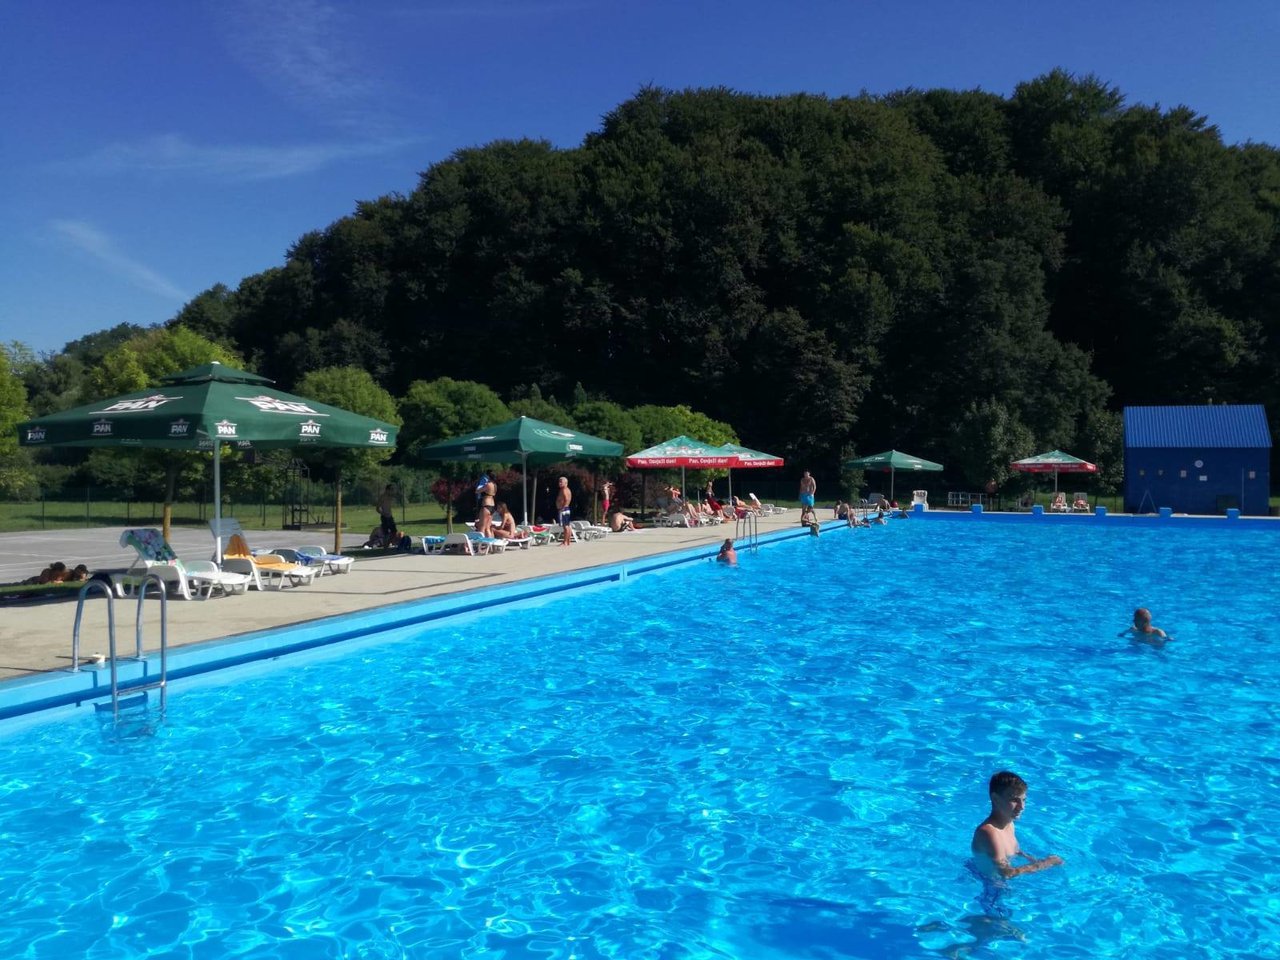 Fotografija: U ponedjeljak kreće škola plivanja na šandrovačkom bazenu//Foto: Facebook bazen Gradina Šandrovac
